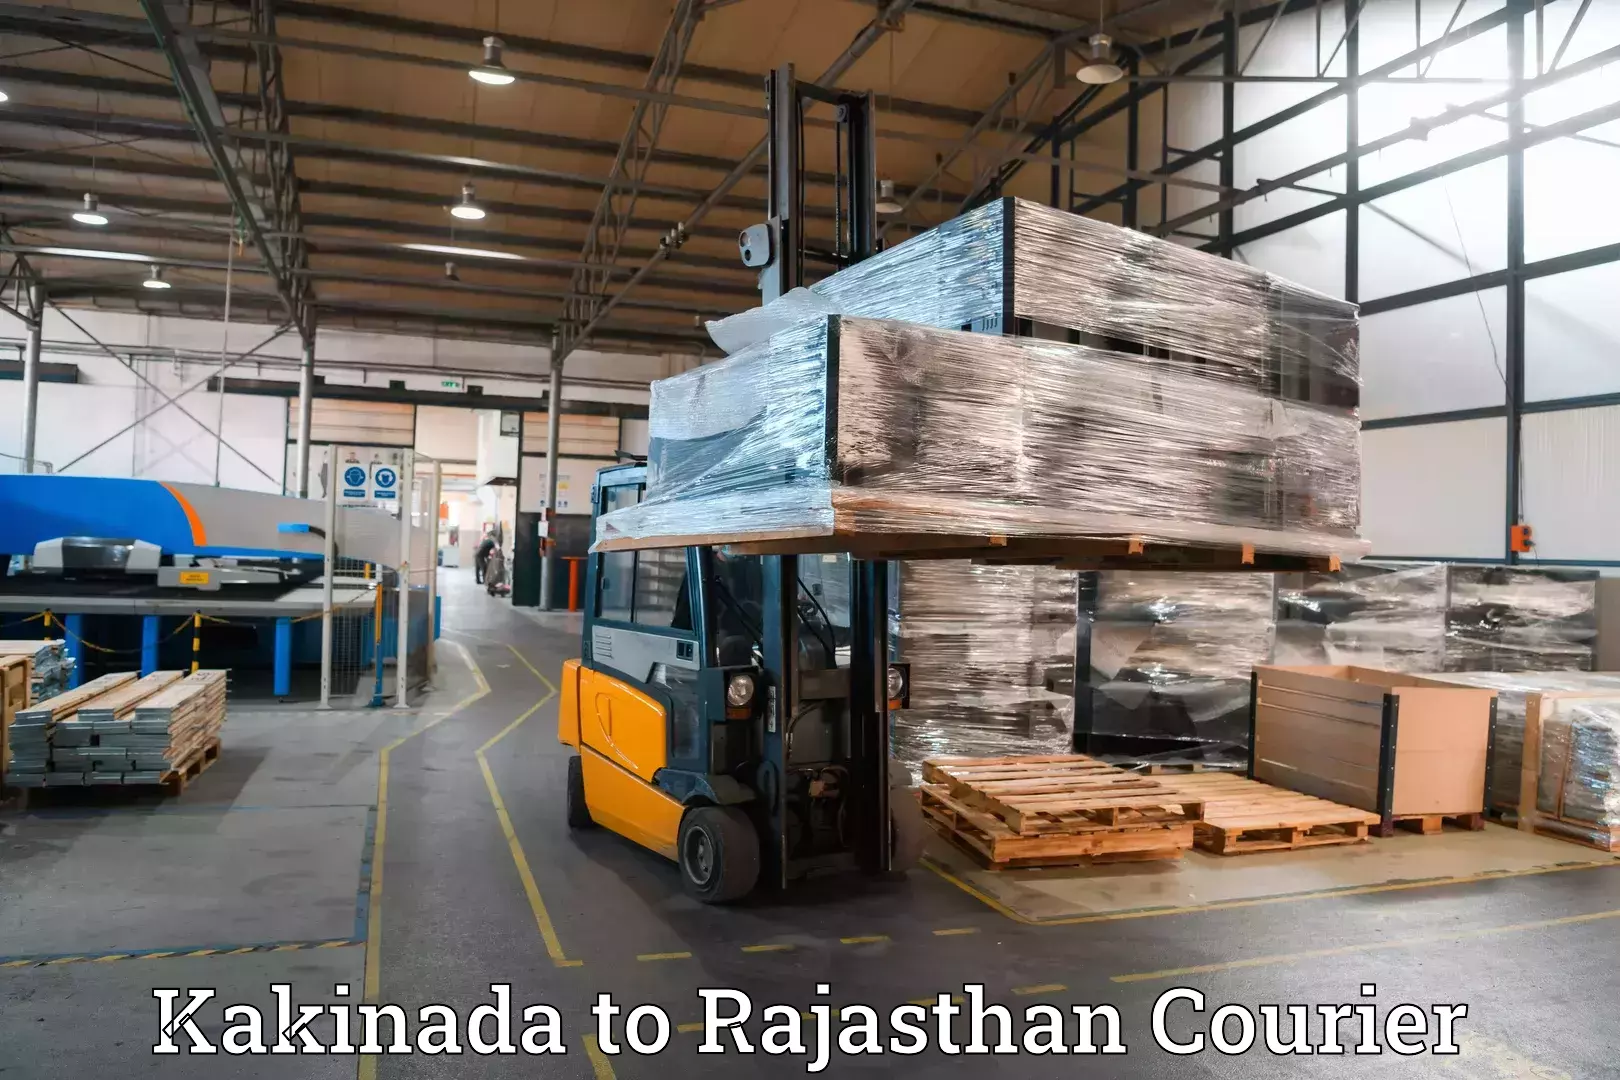 Luggage transport operations Kakinada to Bhilwara